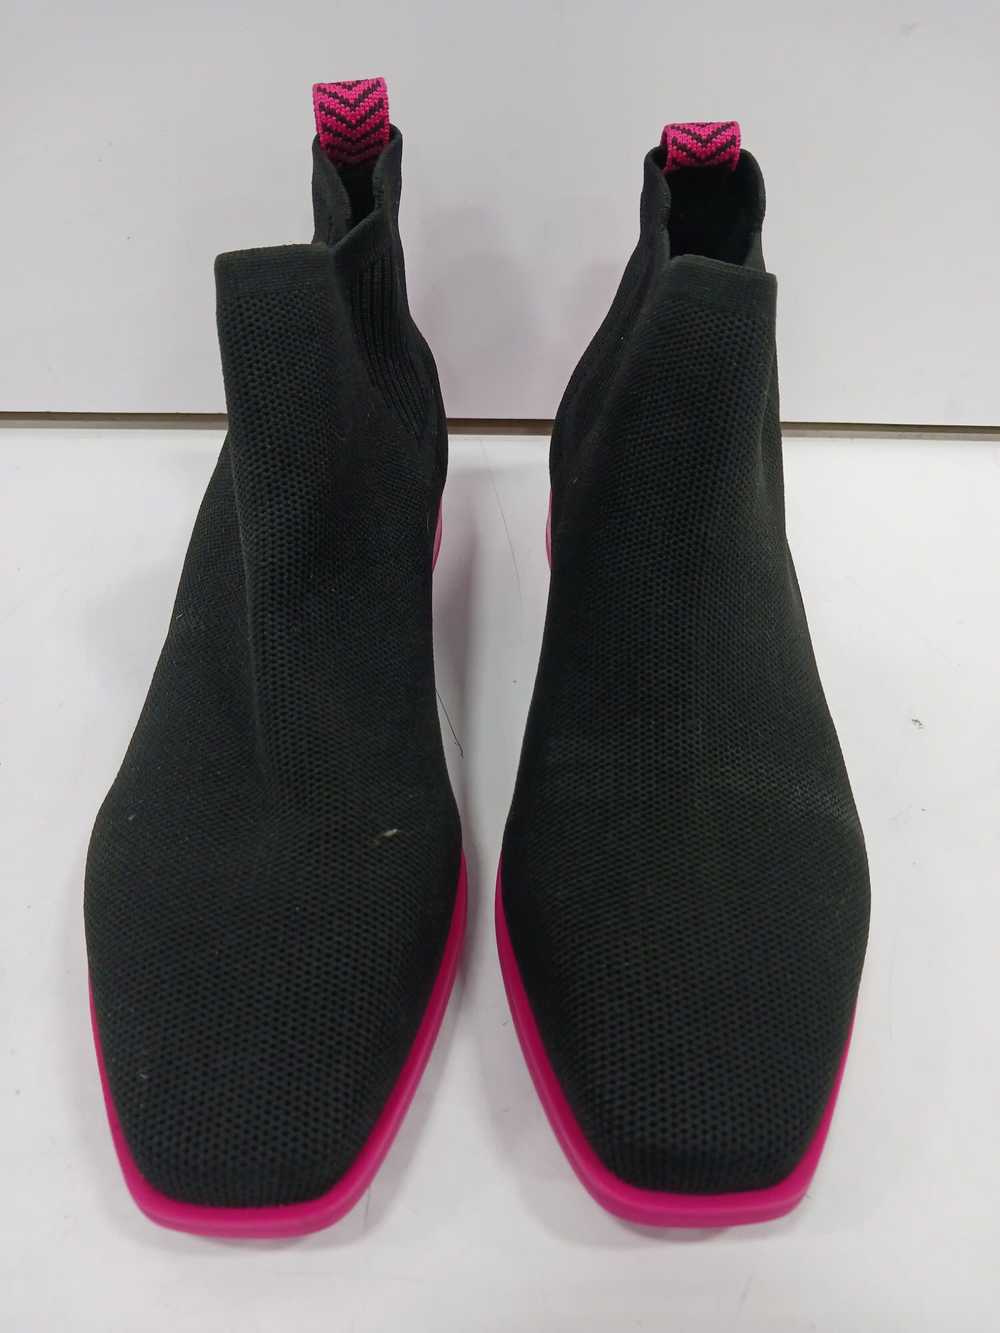 Vivaia Women's Black & Pink Size 10 Shoes - image 1